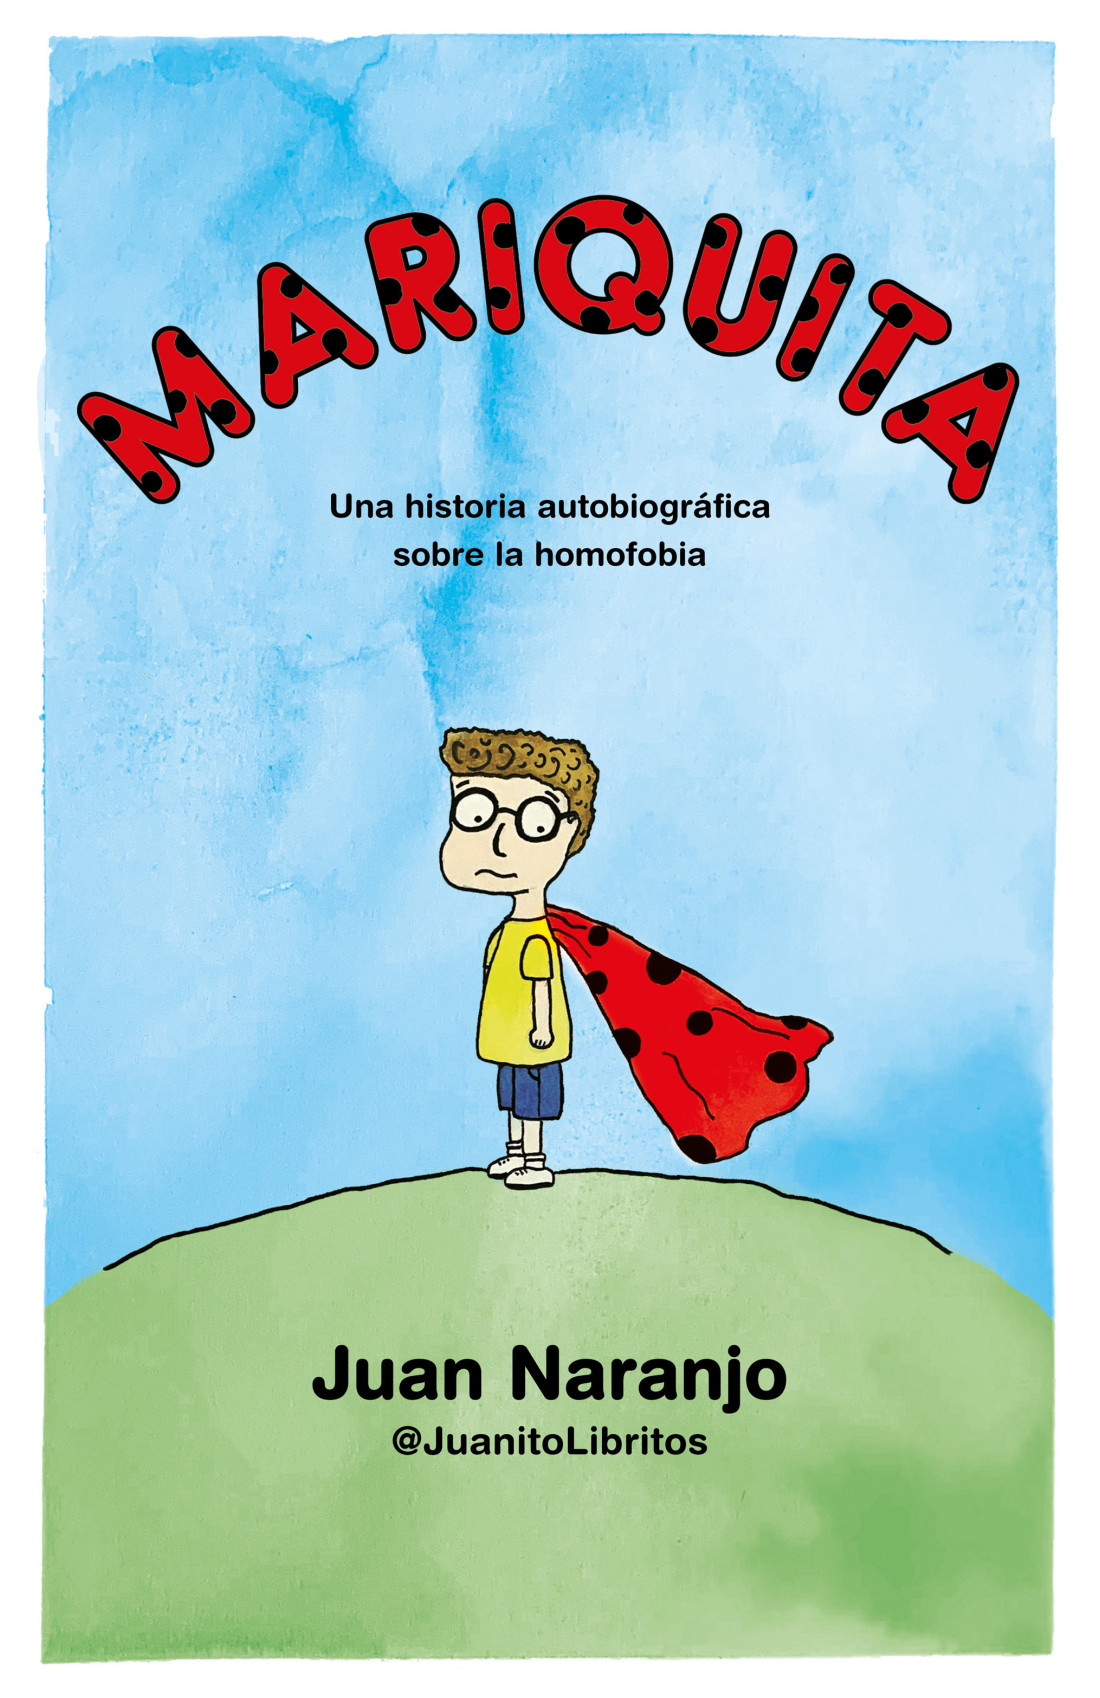 Imagen de portada del libro Mariquita